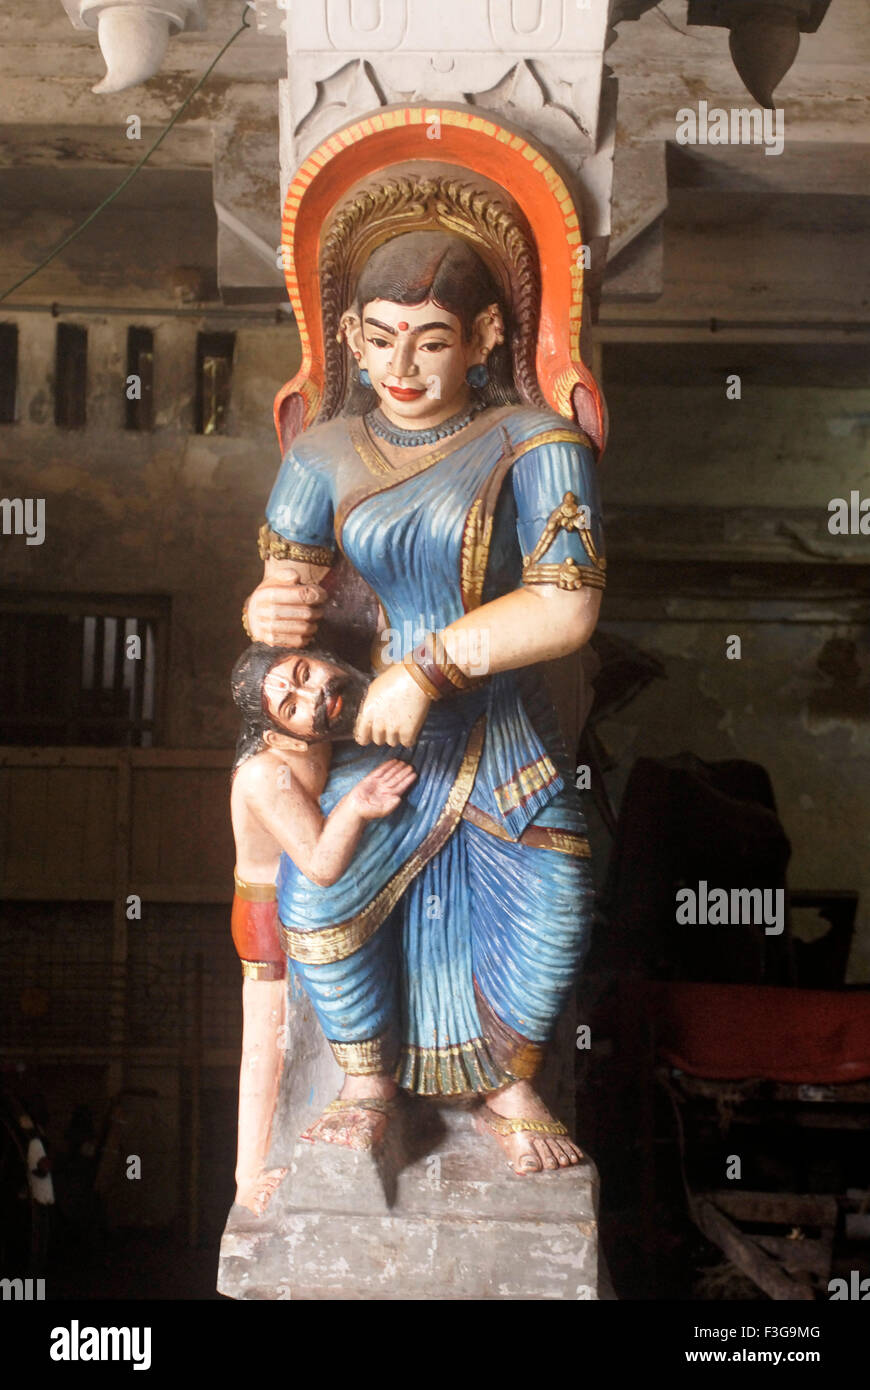 Ricamente tallada y pintado de colores vivos en la escultura del hombre que llevaba 9 yardas sari, en el templo de Rameswaram ; Char Dham ; Tamil Nadu Foto de stock